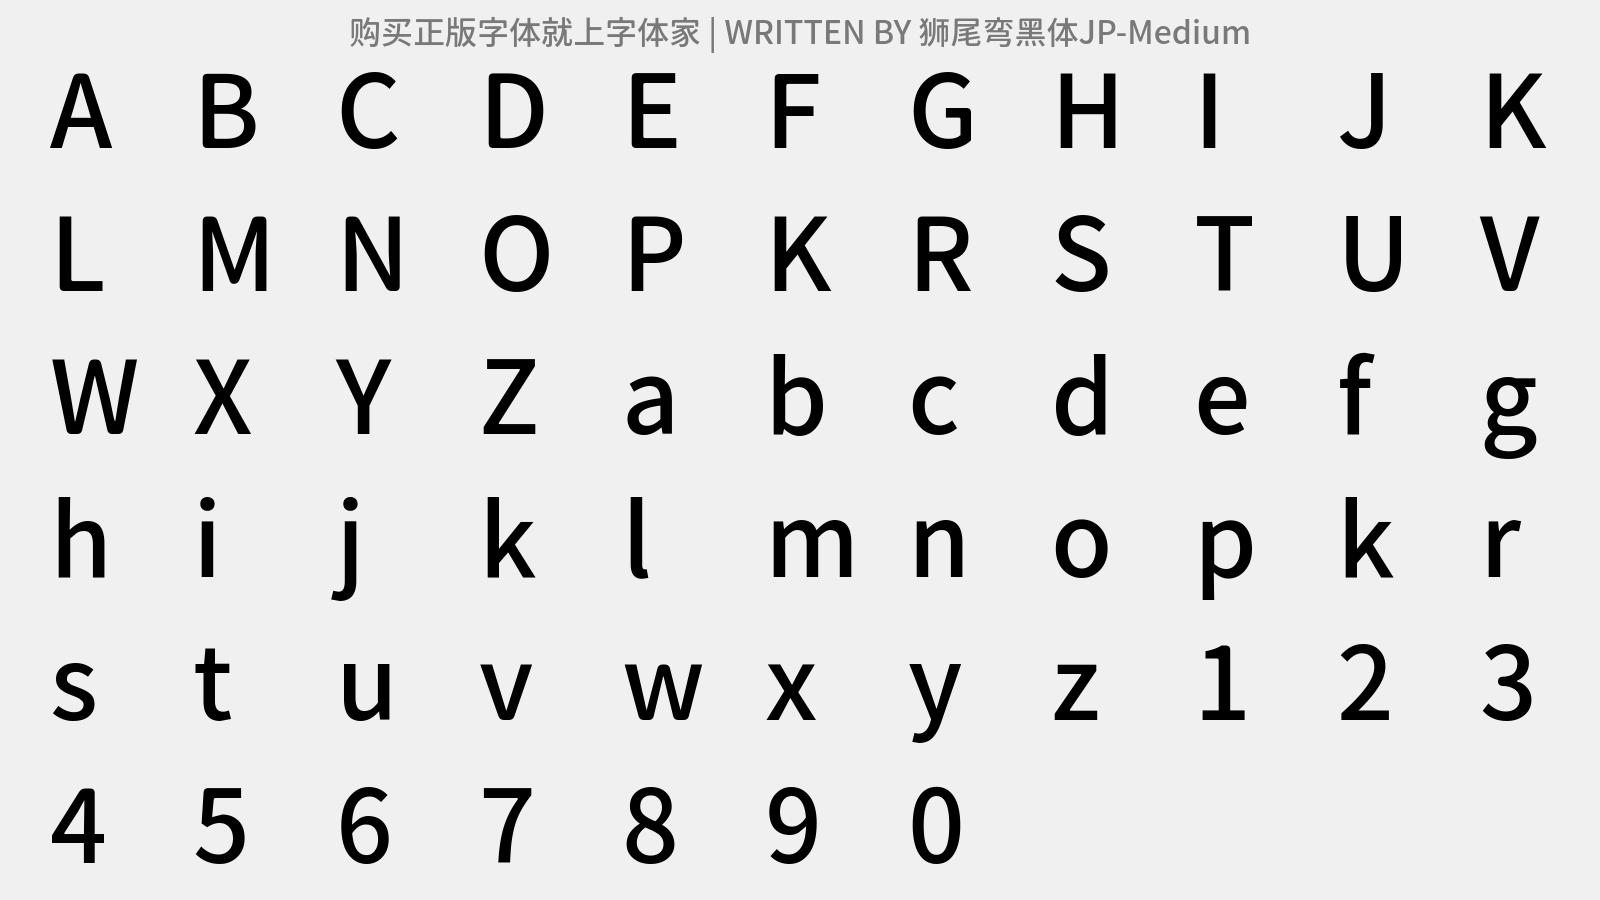 狮尾弯黑体JP-Medium - 大写字母/小写字母/数字